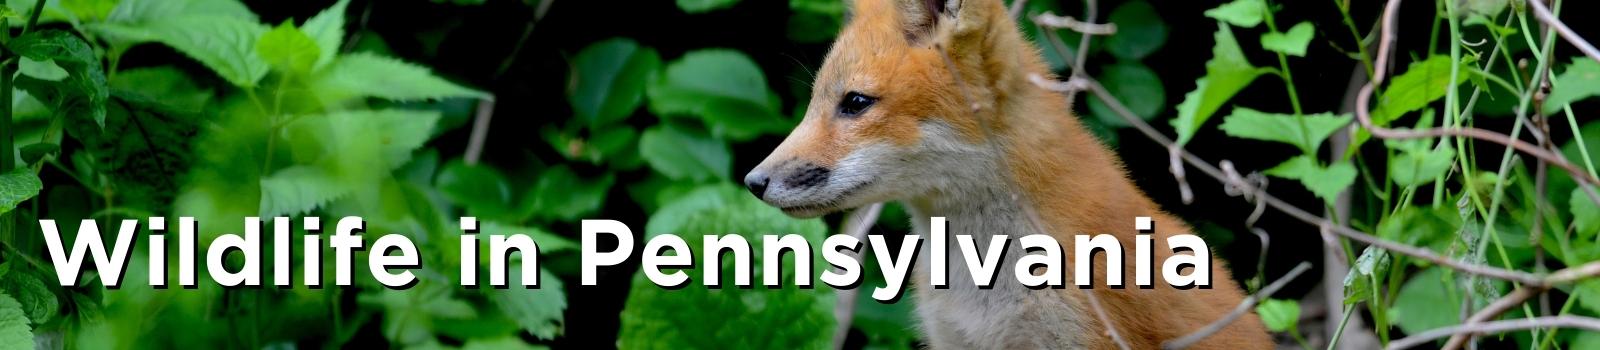 Wildlife in Pennsylvania (1).jpg